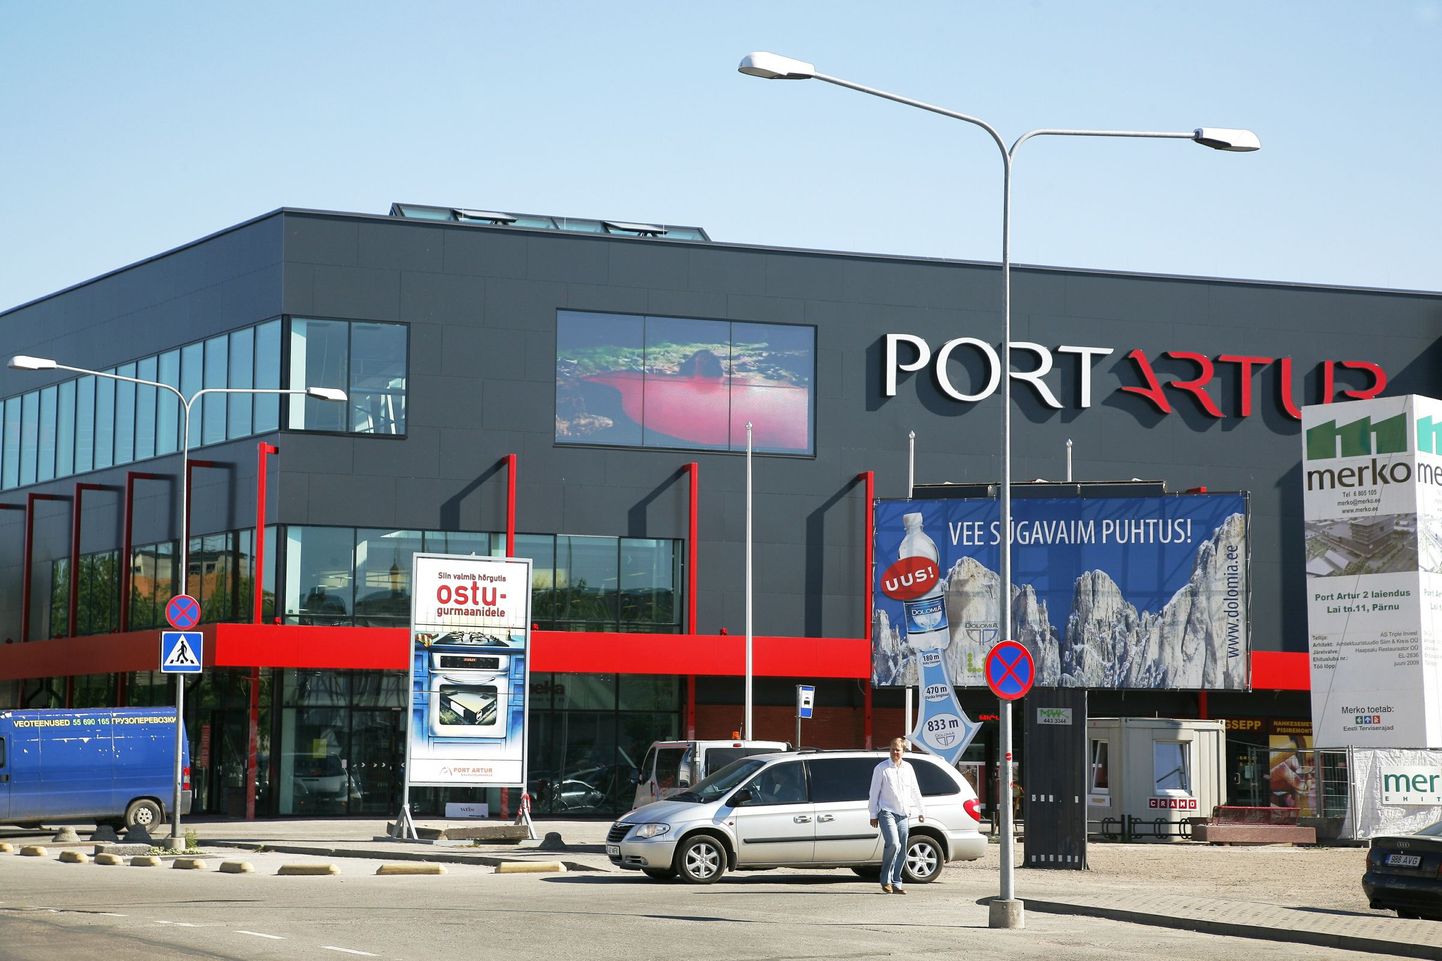 Pärnu linnavalitsus saatis volikogusse eelnõu, milles lubatakse Port Artur 2 kaubanduskeskusele maja kõrgust muutmata neljas korrus ehitada.